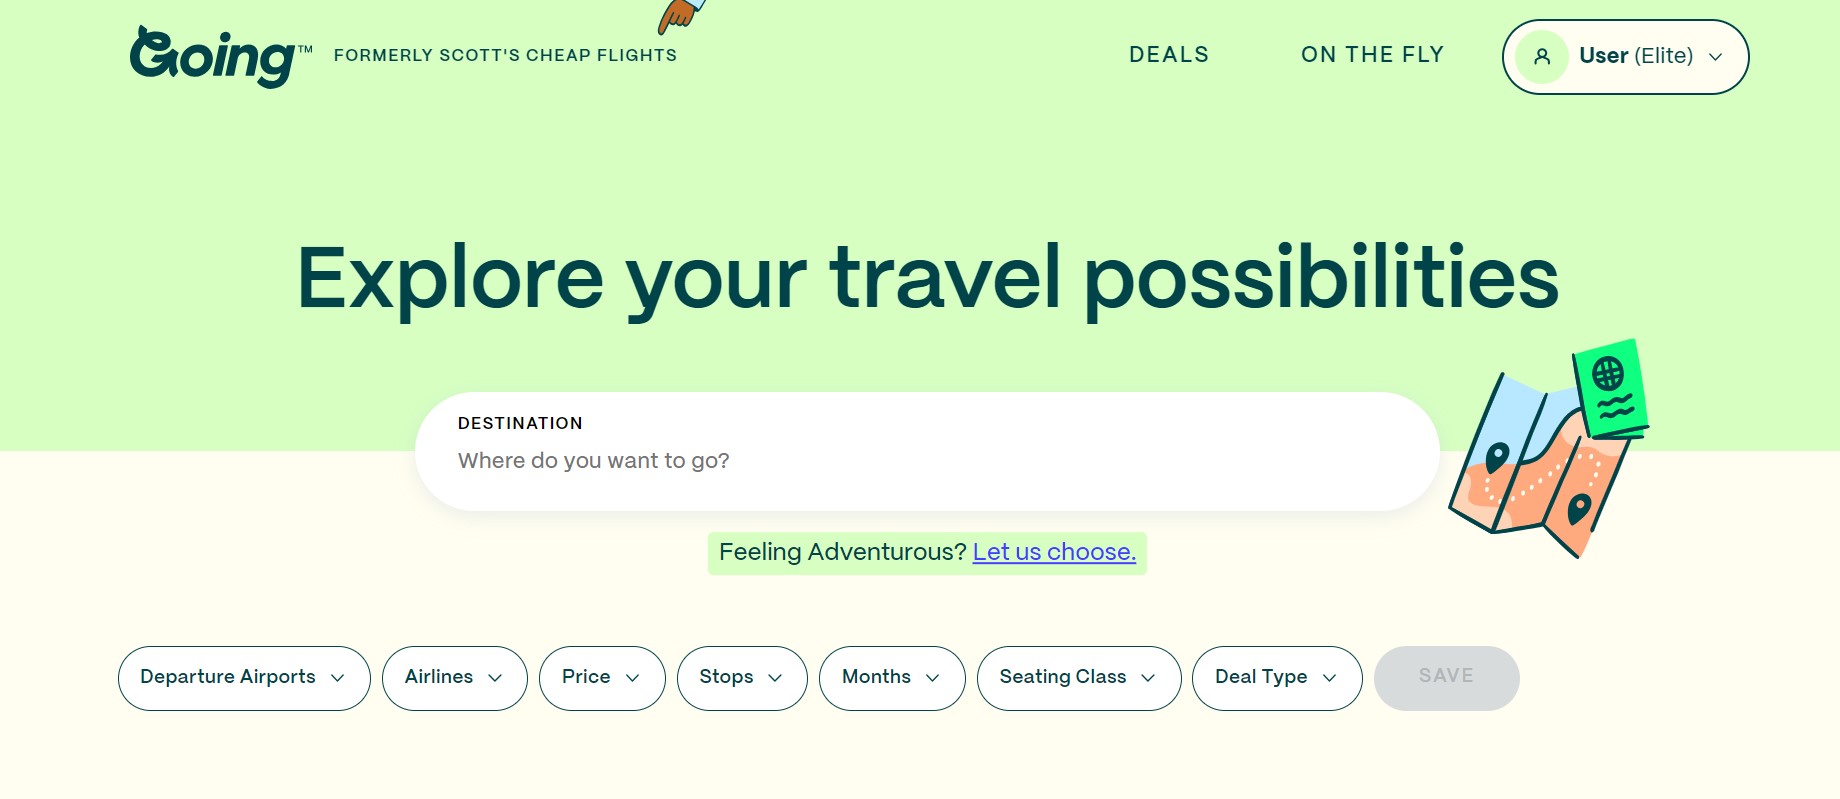 لقطة شاشة من موقع Going travel تظهر شريط بحث وعوامل تصفية لتحديدها